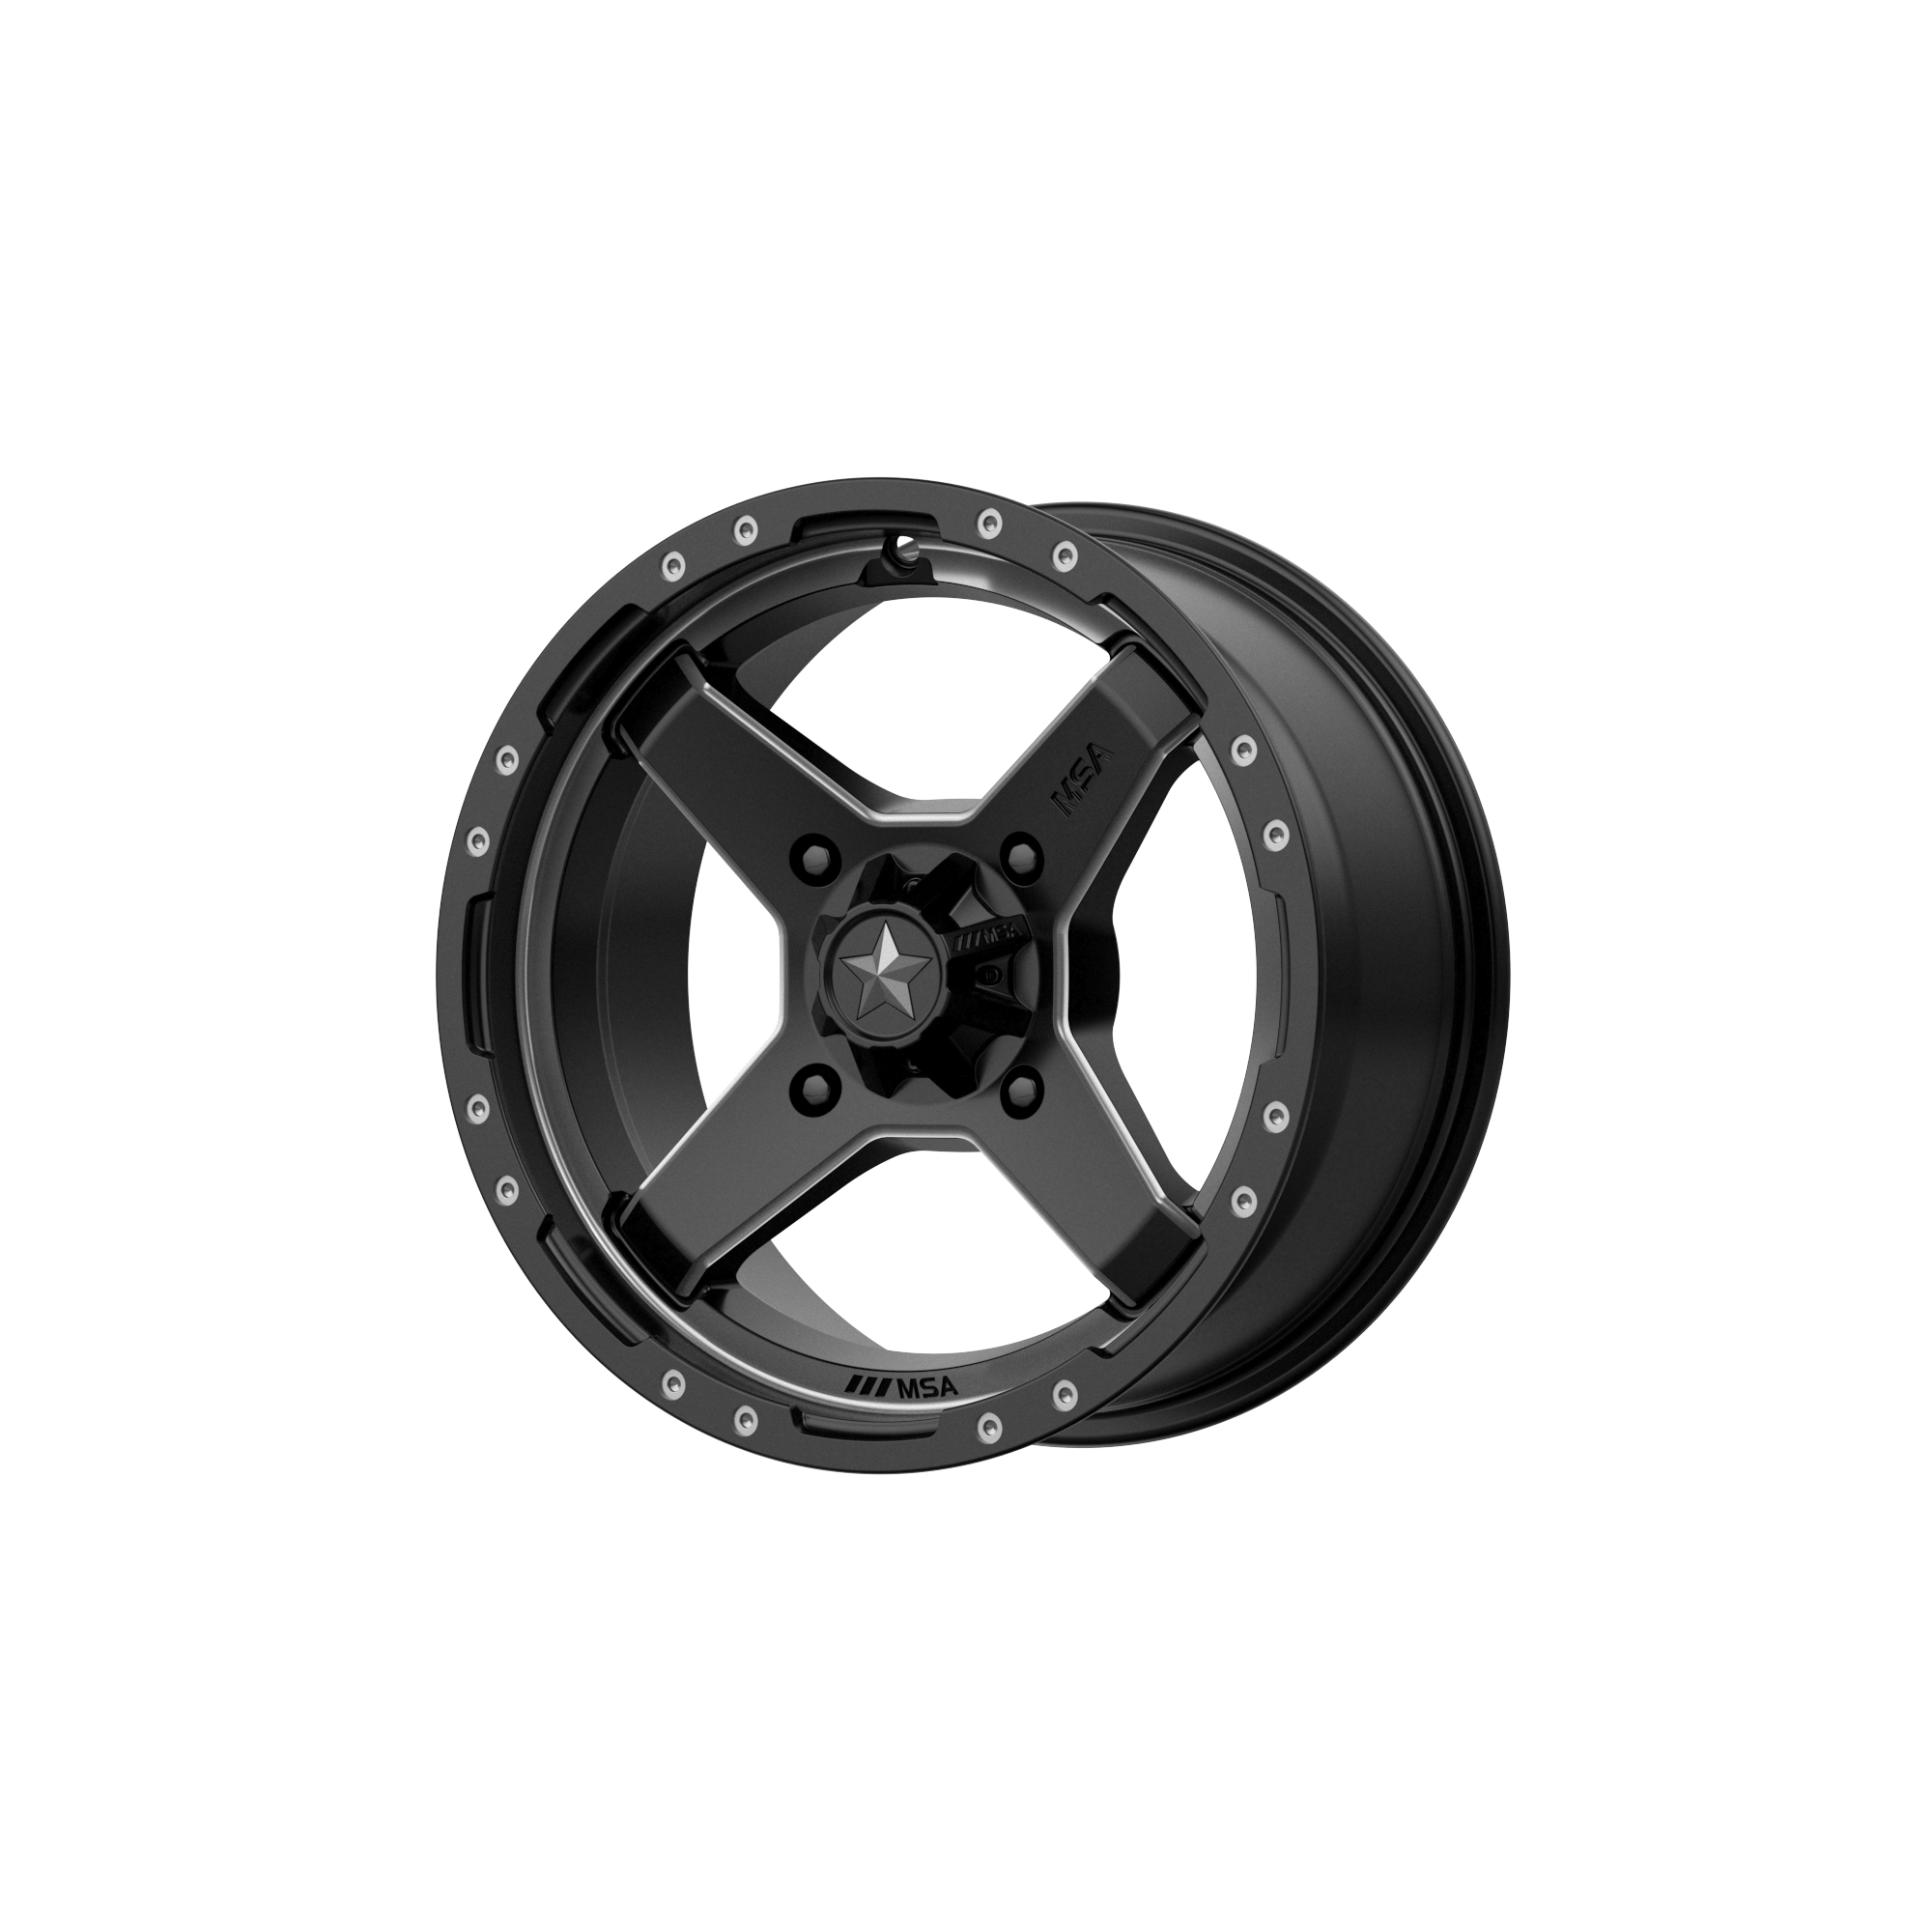 MSA Offroad Wheels M39 CROSS 14x7 10 4x156/4x156 Satin Black Titanium Tint